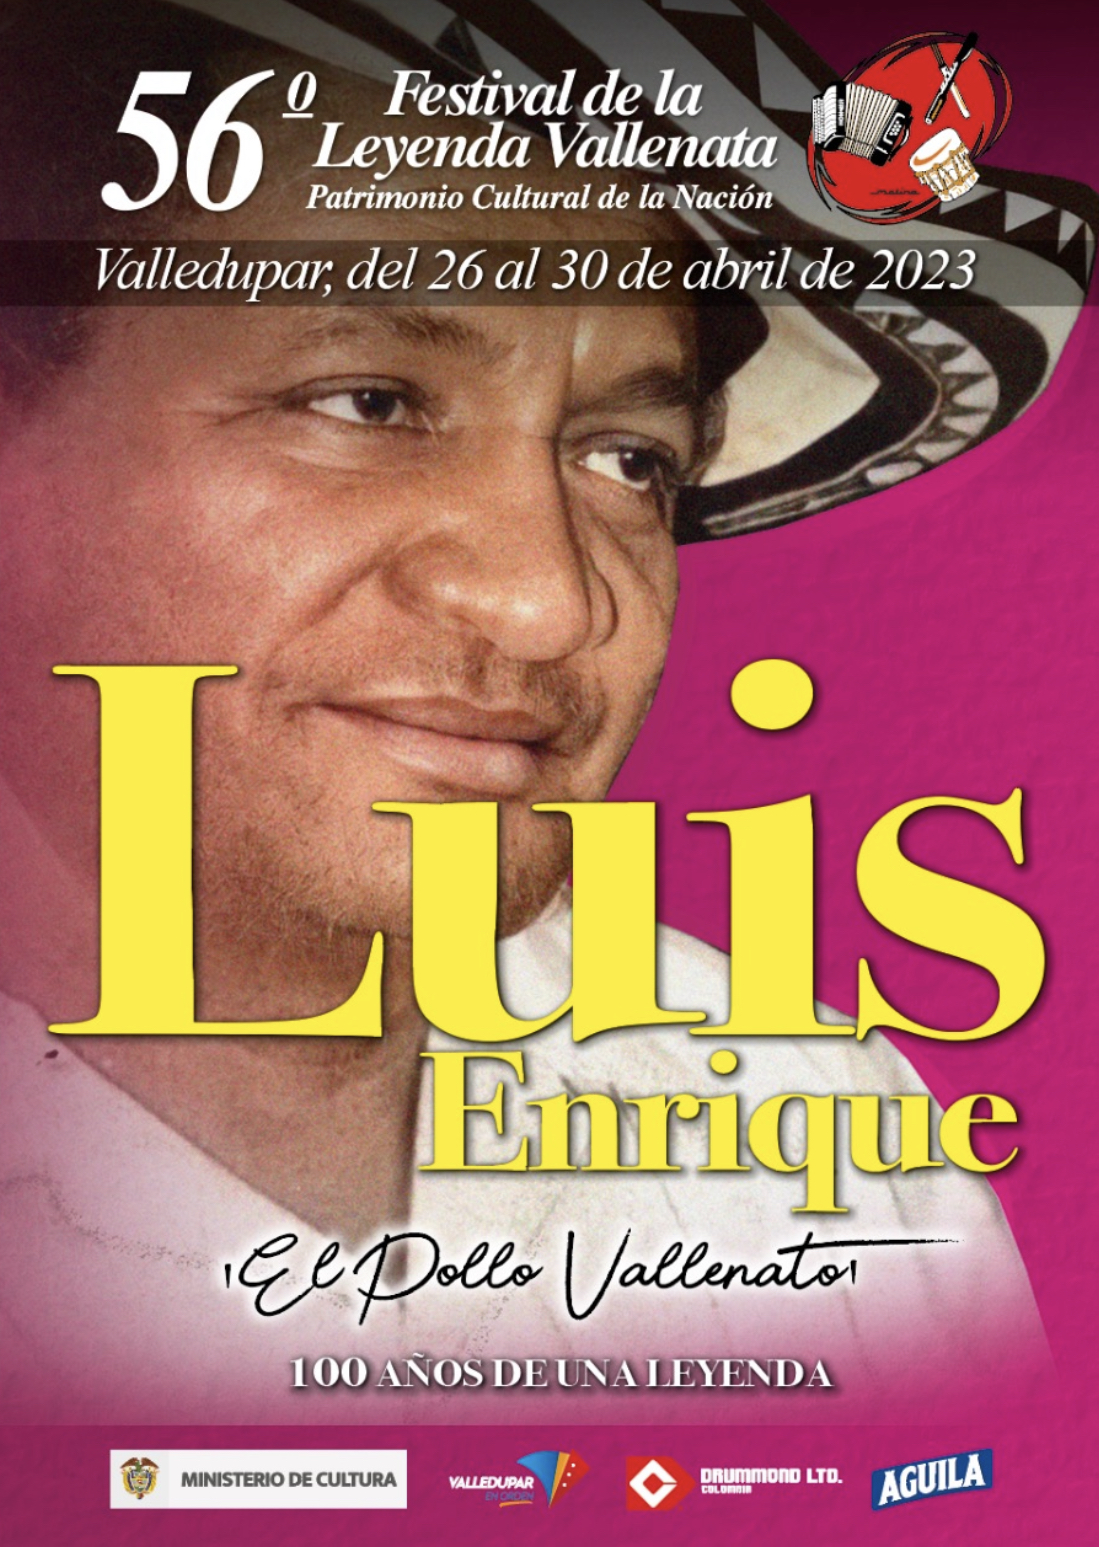 Este es el afiche promocional del 56° Festival de la Leyenda Vallenata en homenaje a Luis Enrique Martínez